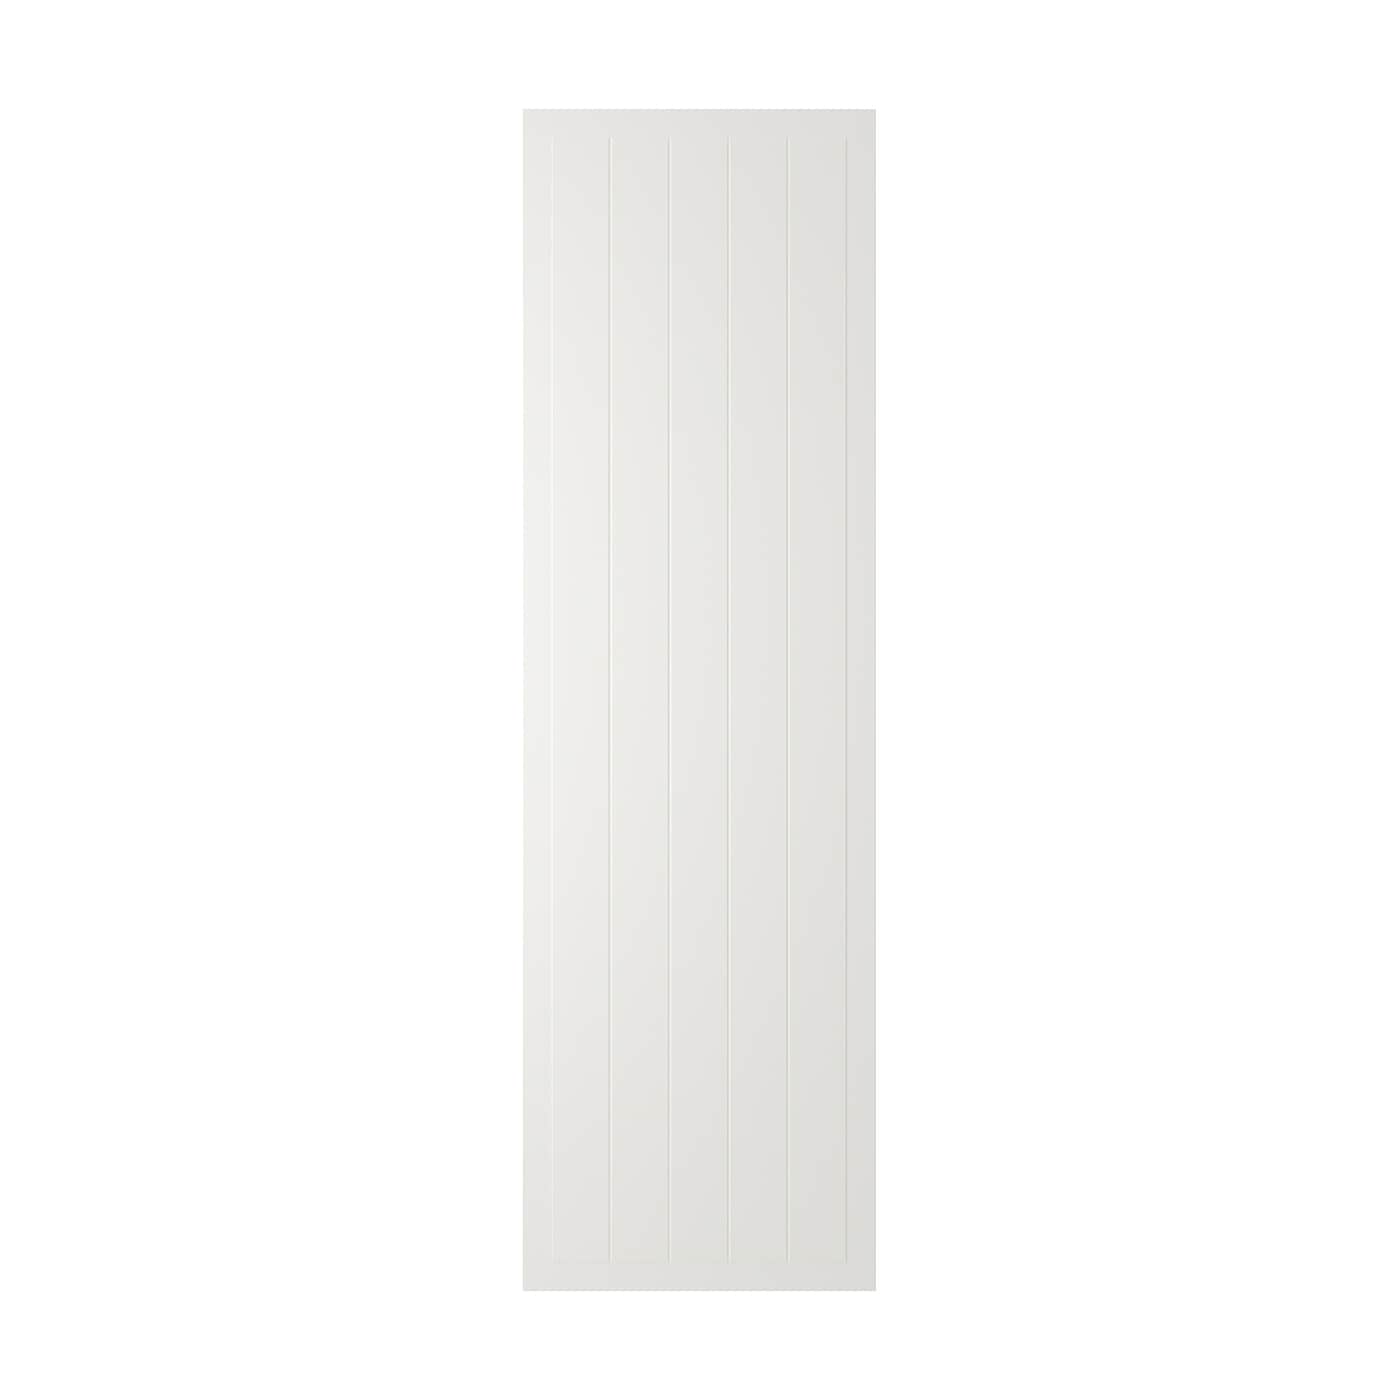 Фасад - IKEA STENSUND, 200х60 см, белый, СТЕНСУНД ИКЕА